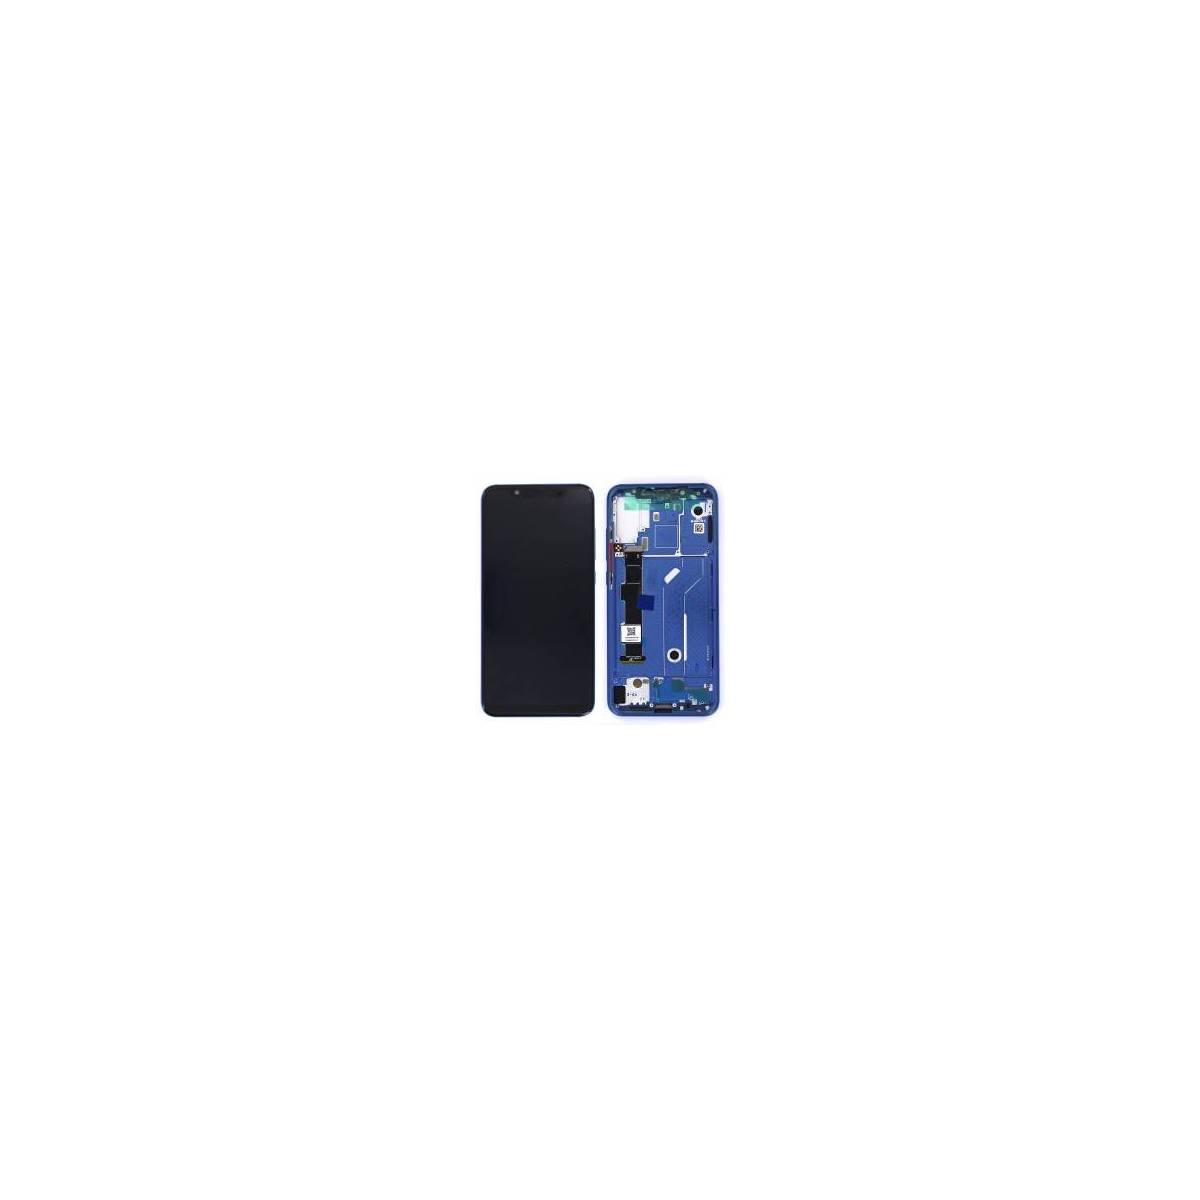 Ecran Xiaomi Mi 8 Bleu